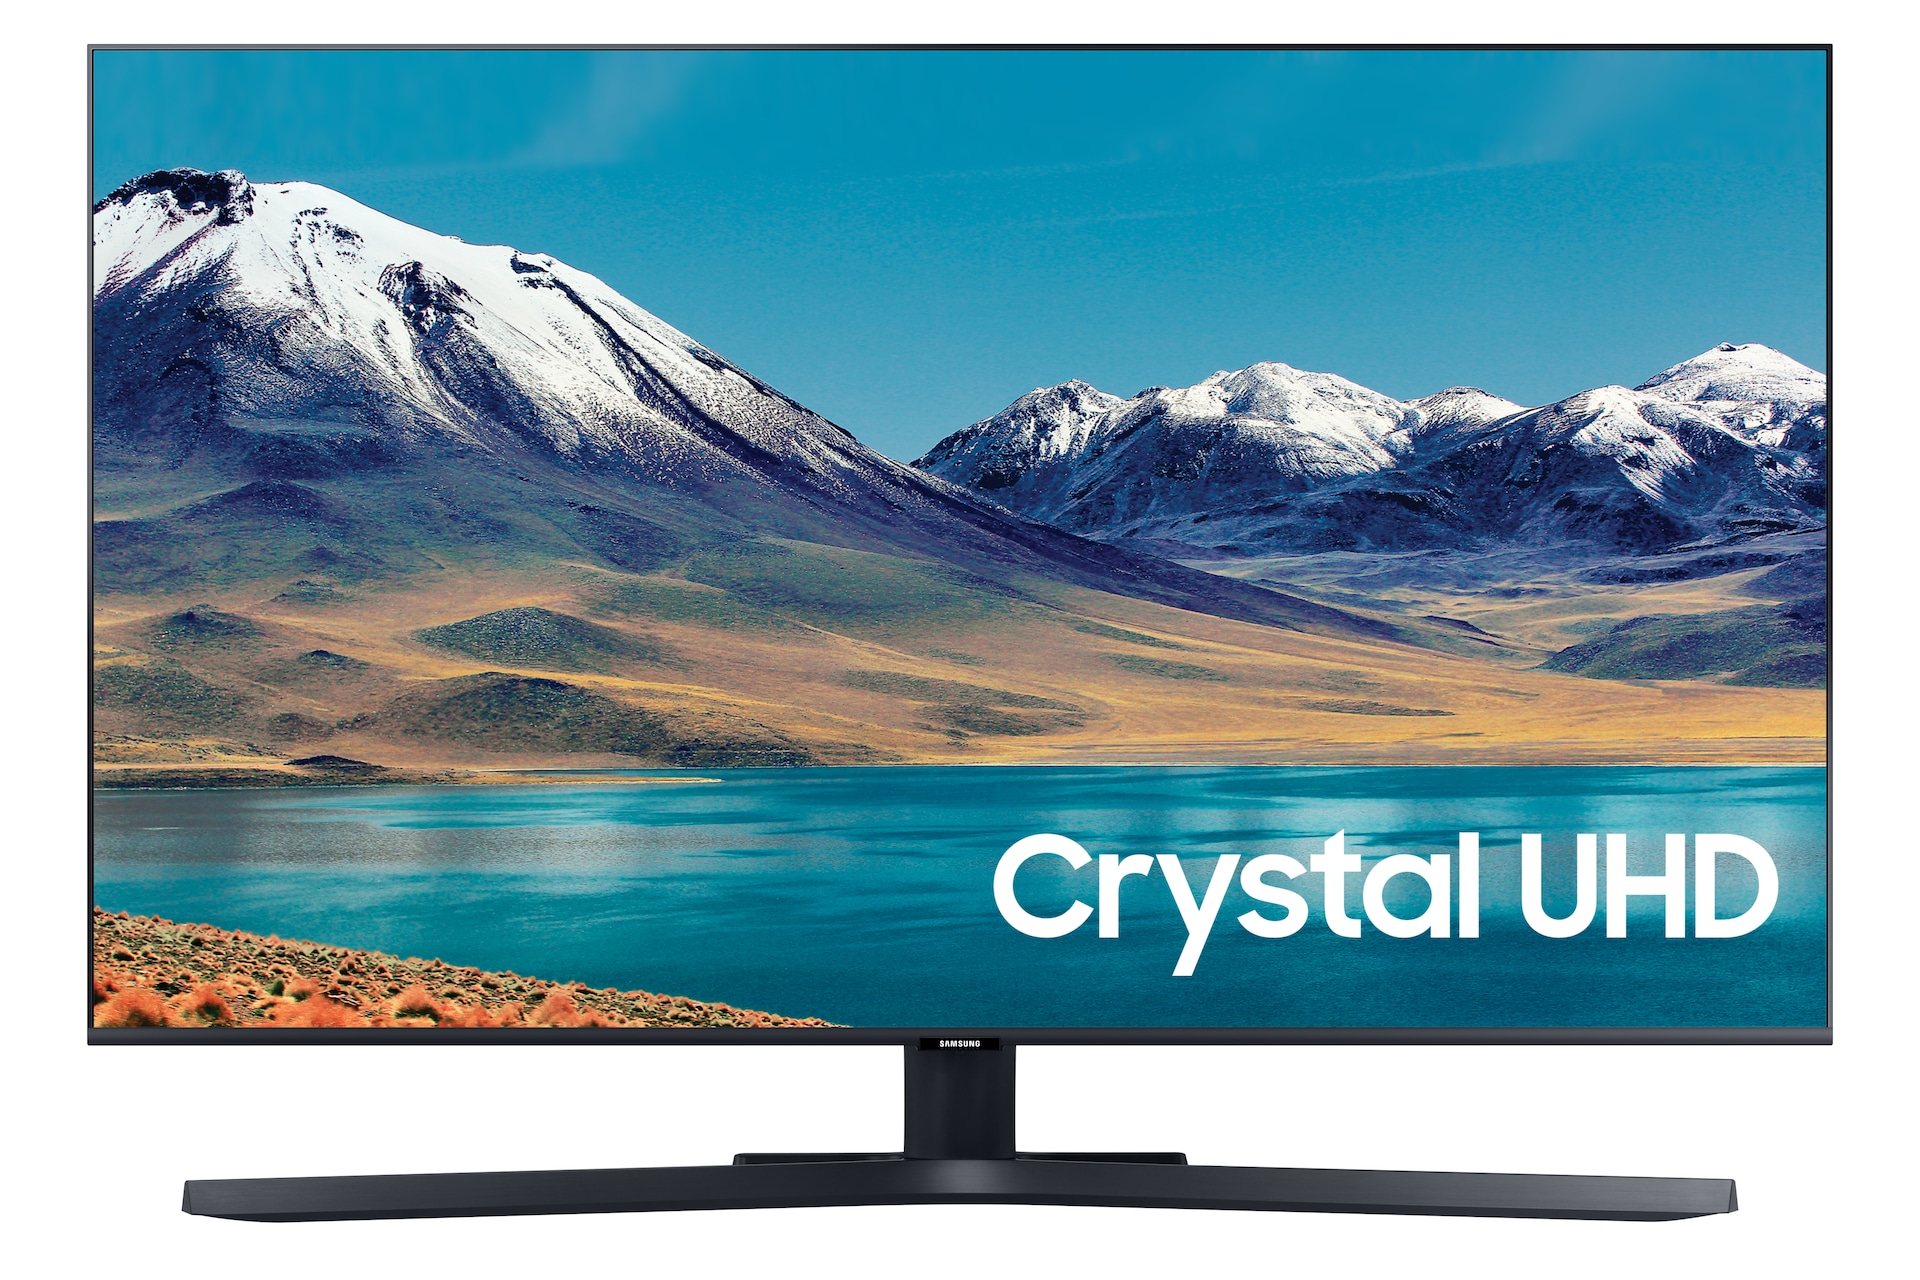 2020 50" TU8507 Crystal UHD 4K HDR Smart TV Samsung Support UK